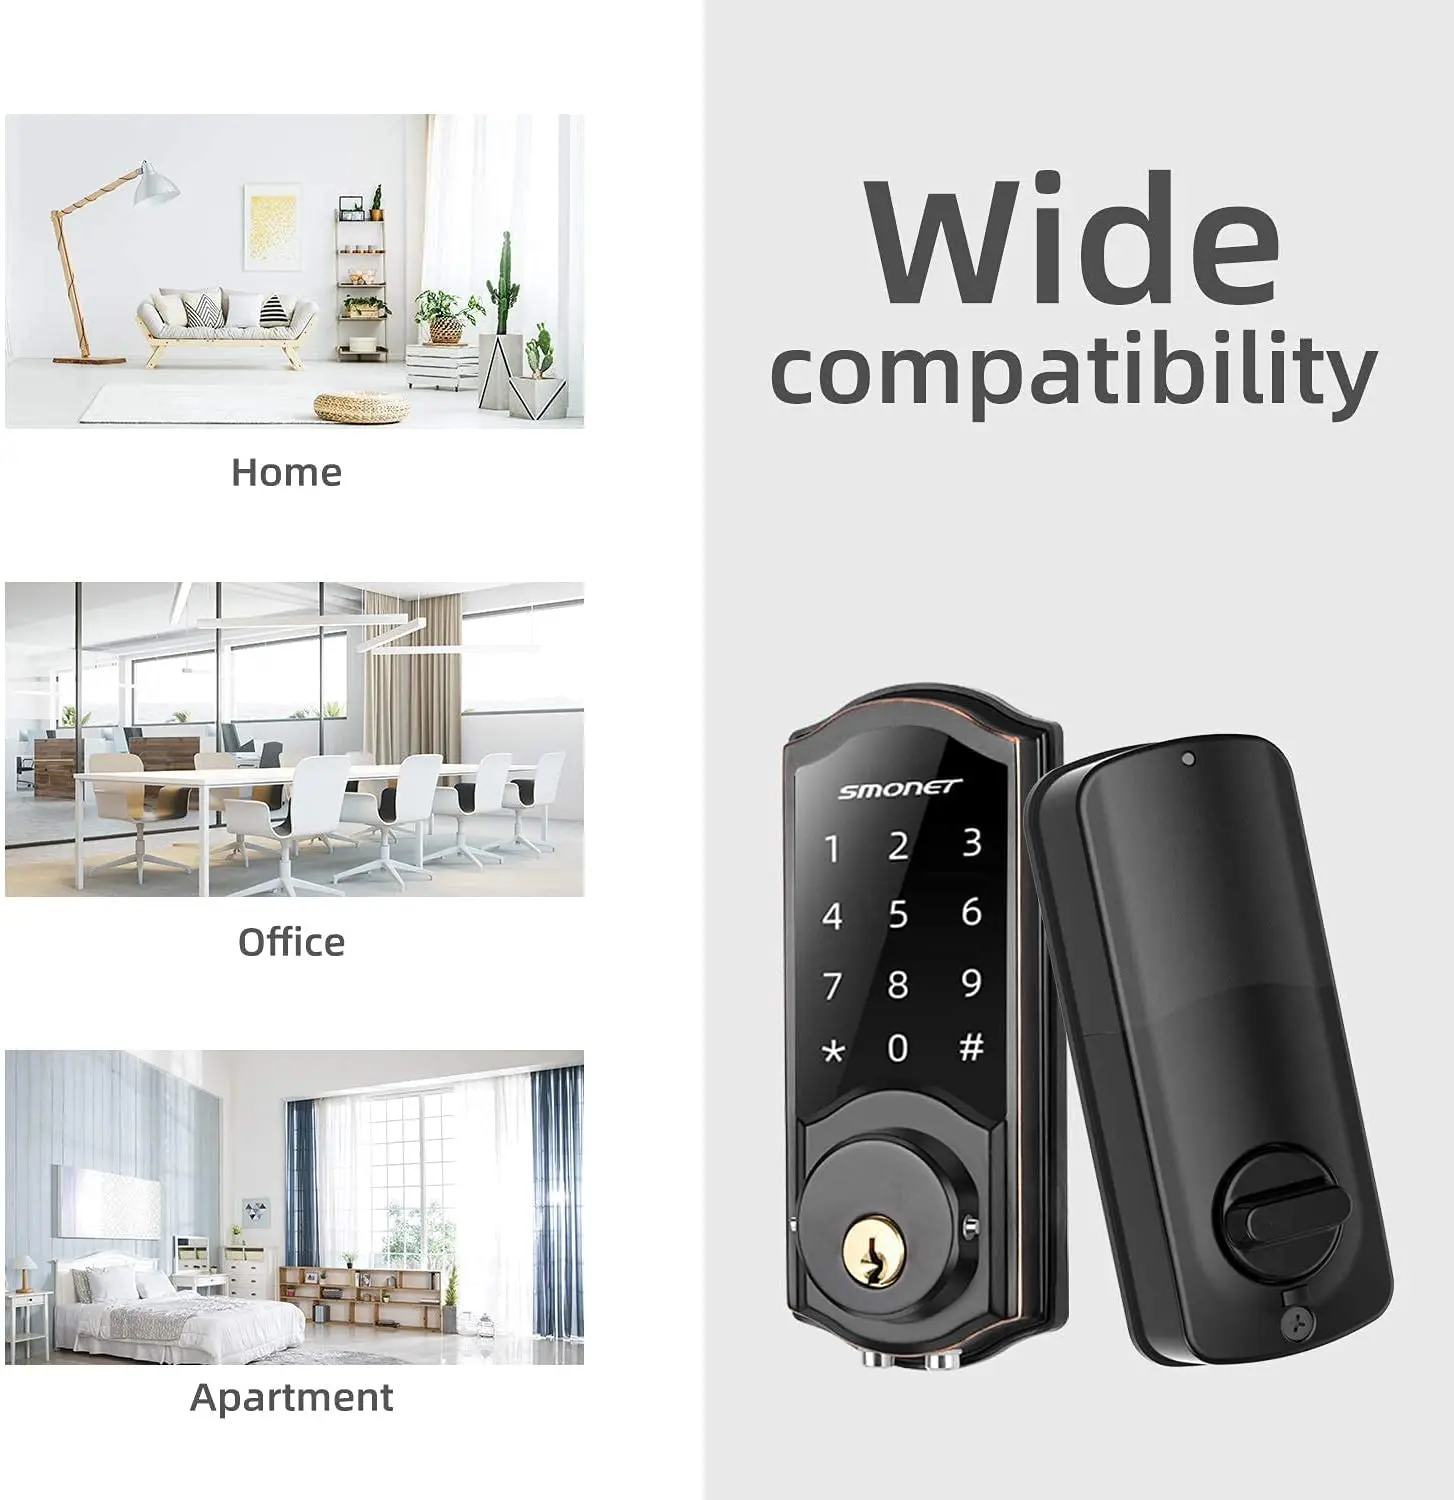 wifi door lock,smonet remote control smart